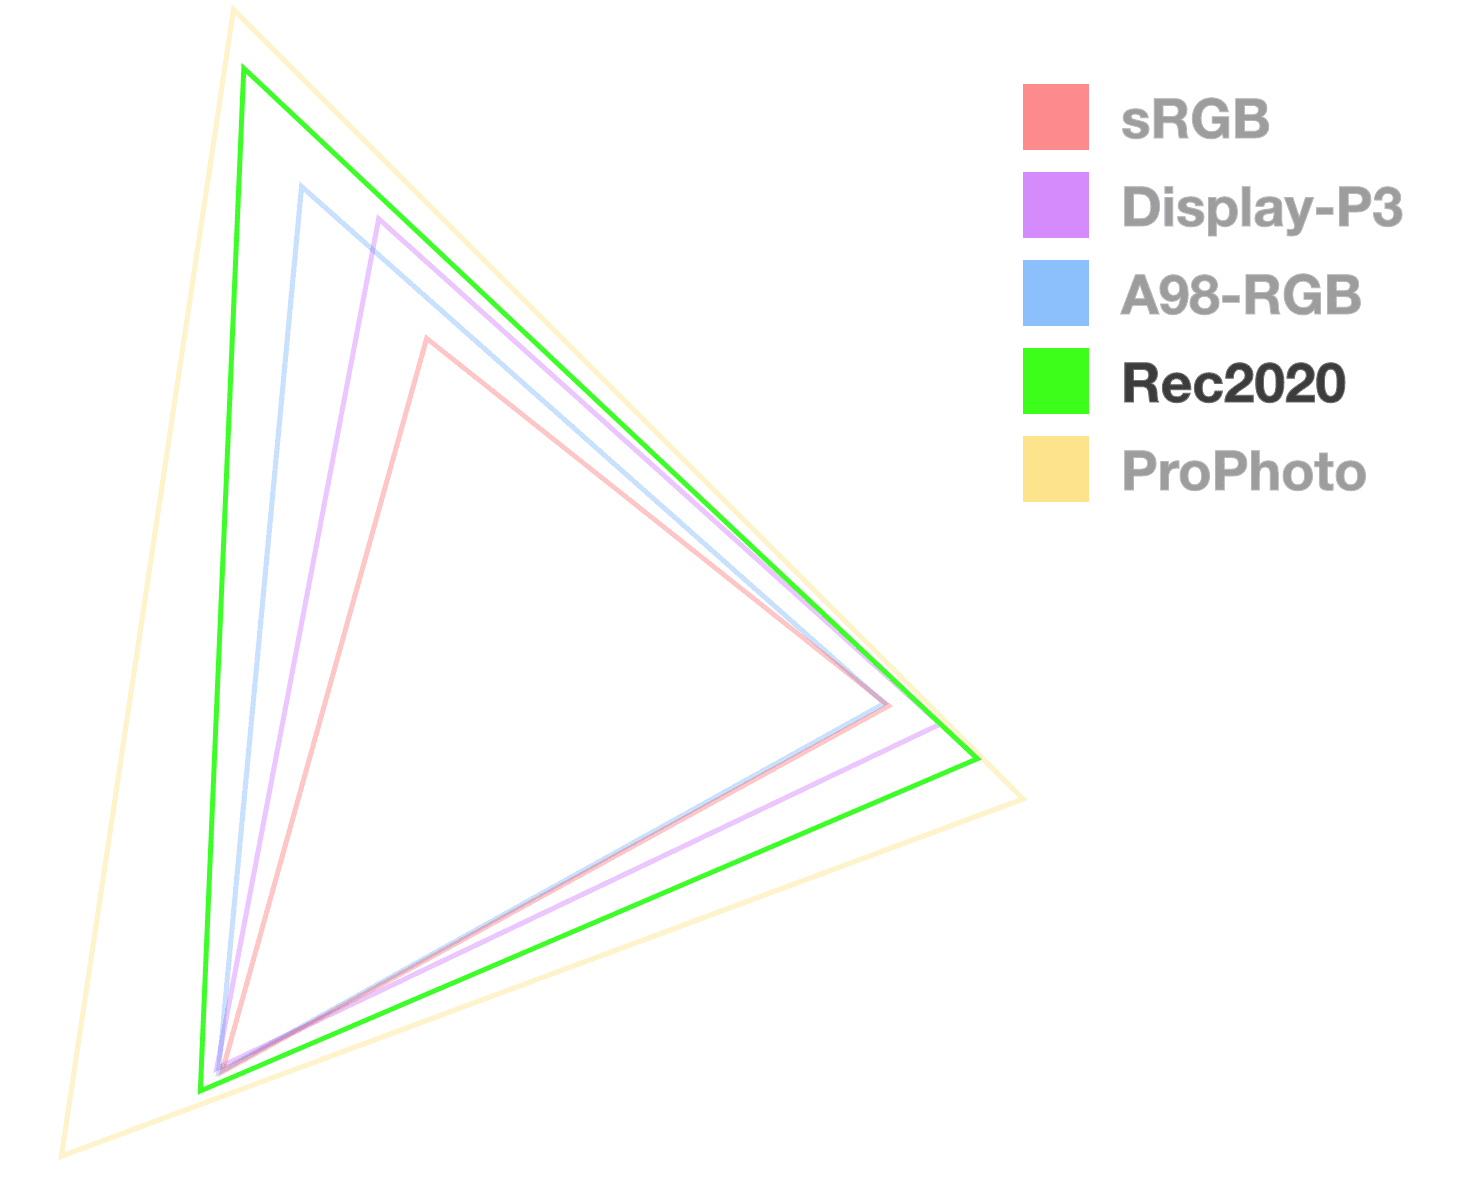 สามเหลี่ยม Rec2020 เป็นเพียงสามเหลี่ยมเดียวที่ทึบแสงเต็มที่ซึ่งช่วยให้เห็นภาพขนาดของขอบเขต ดูเหมือนจะเป็นอันดับ 2 จากใหญ่ที่สุด